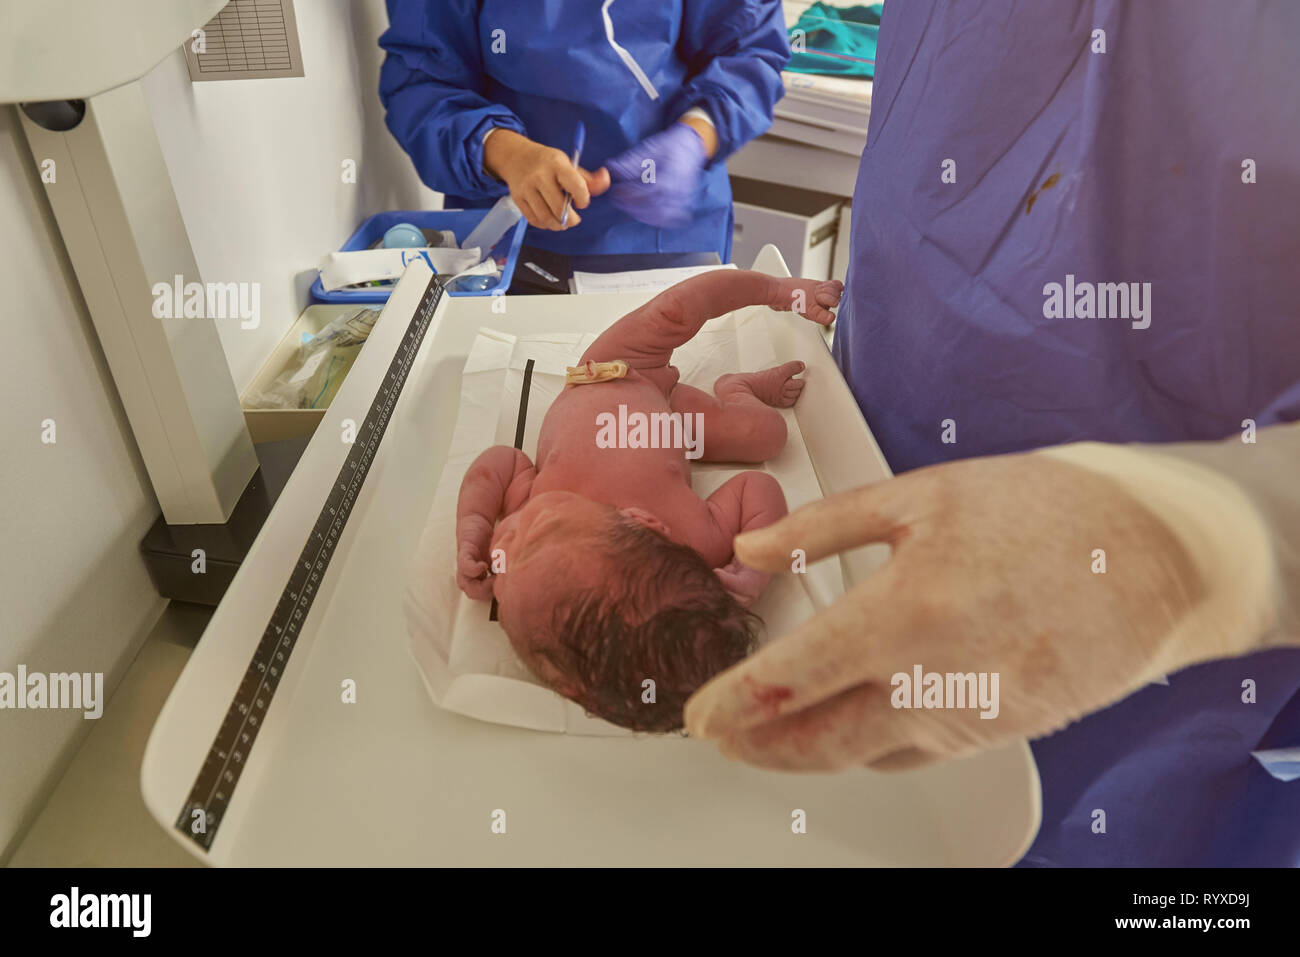 recién nacido niña en el hospital en el día de su nacimiento 26374383 Foto  de stock en Vecteezy